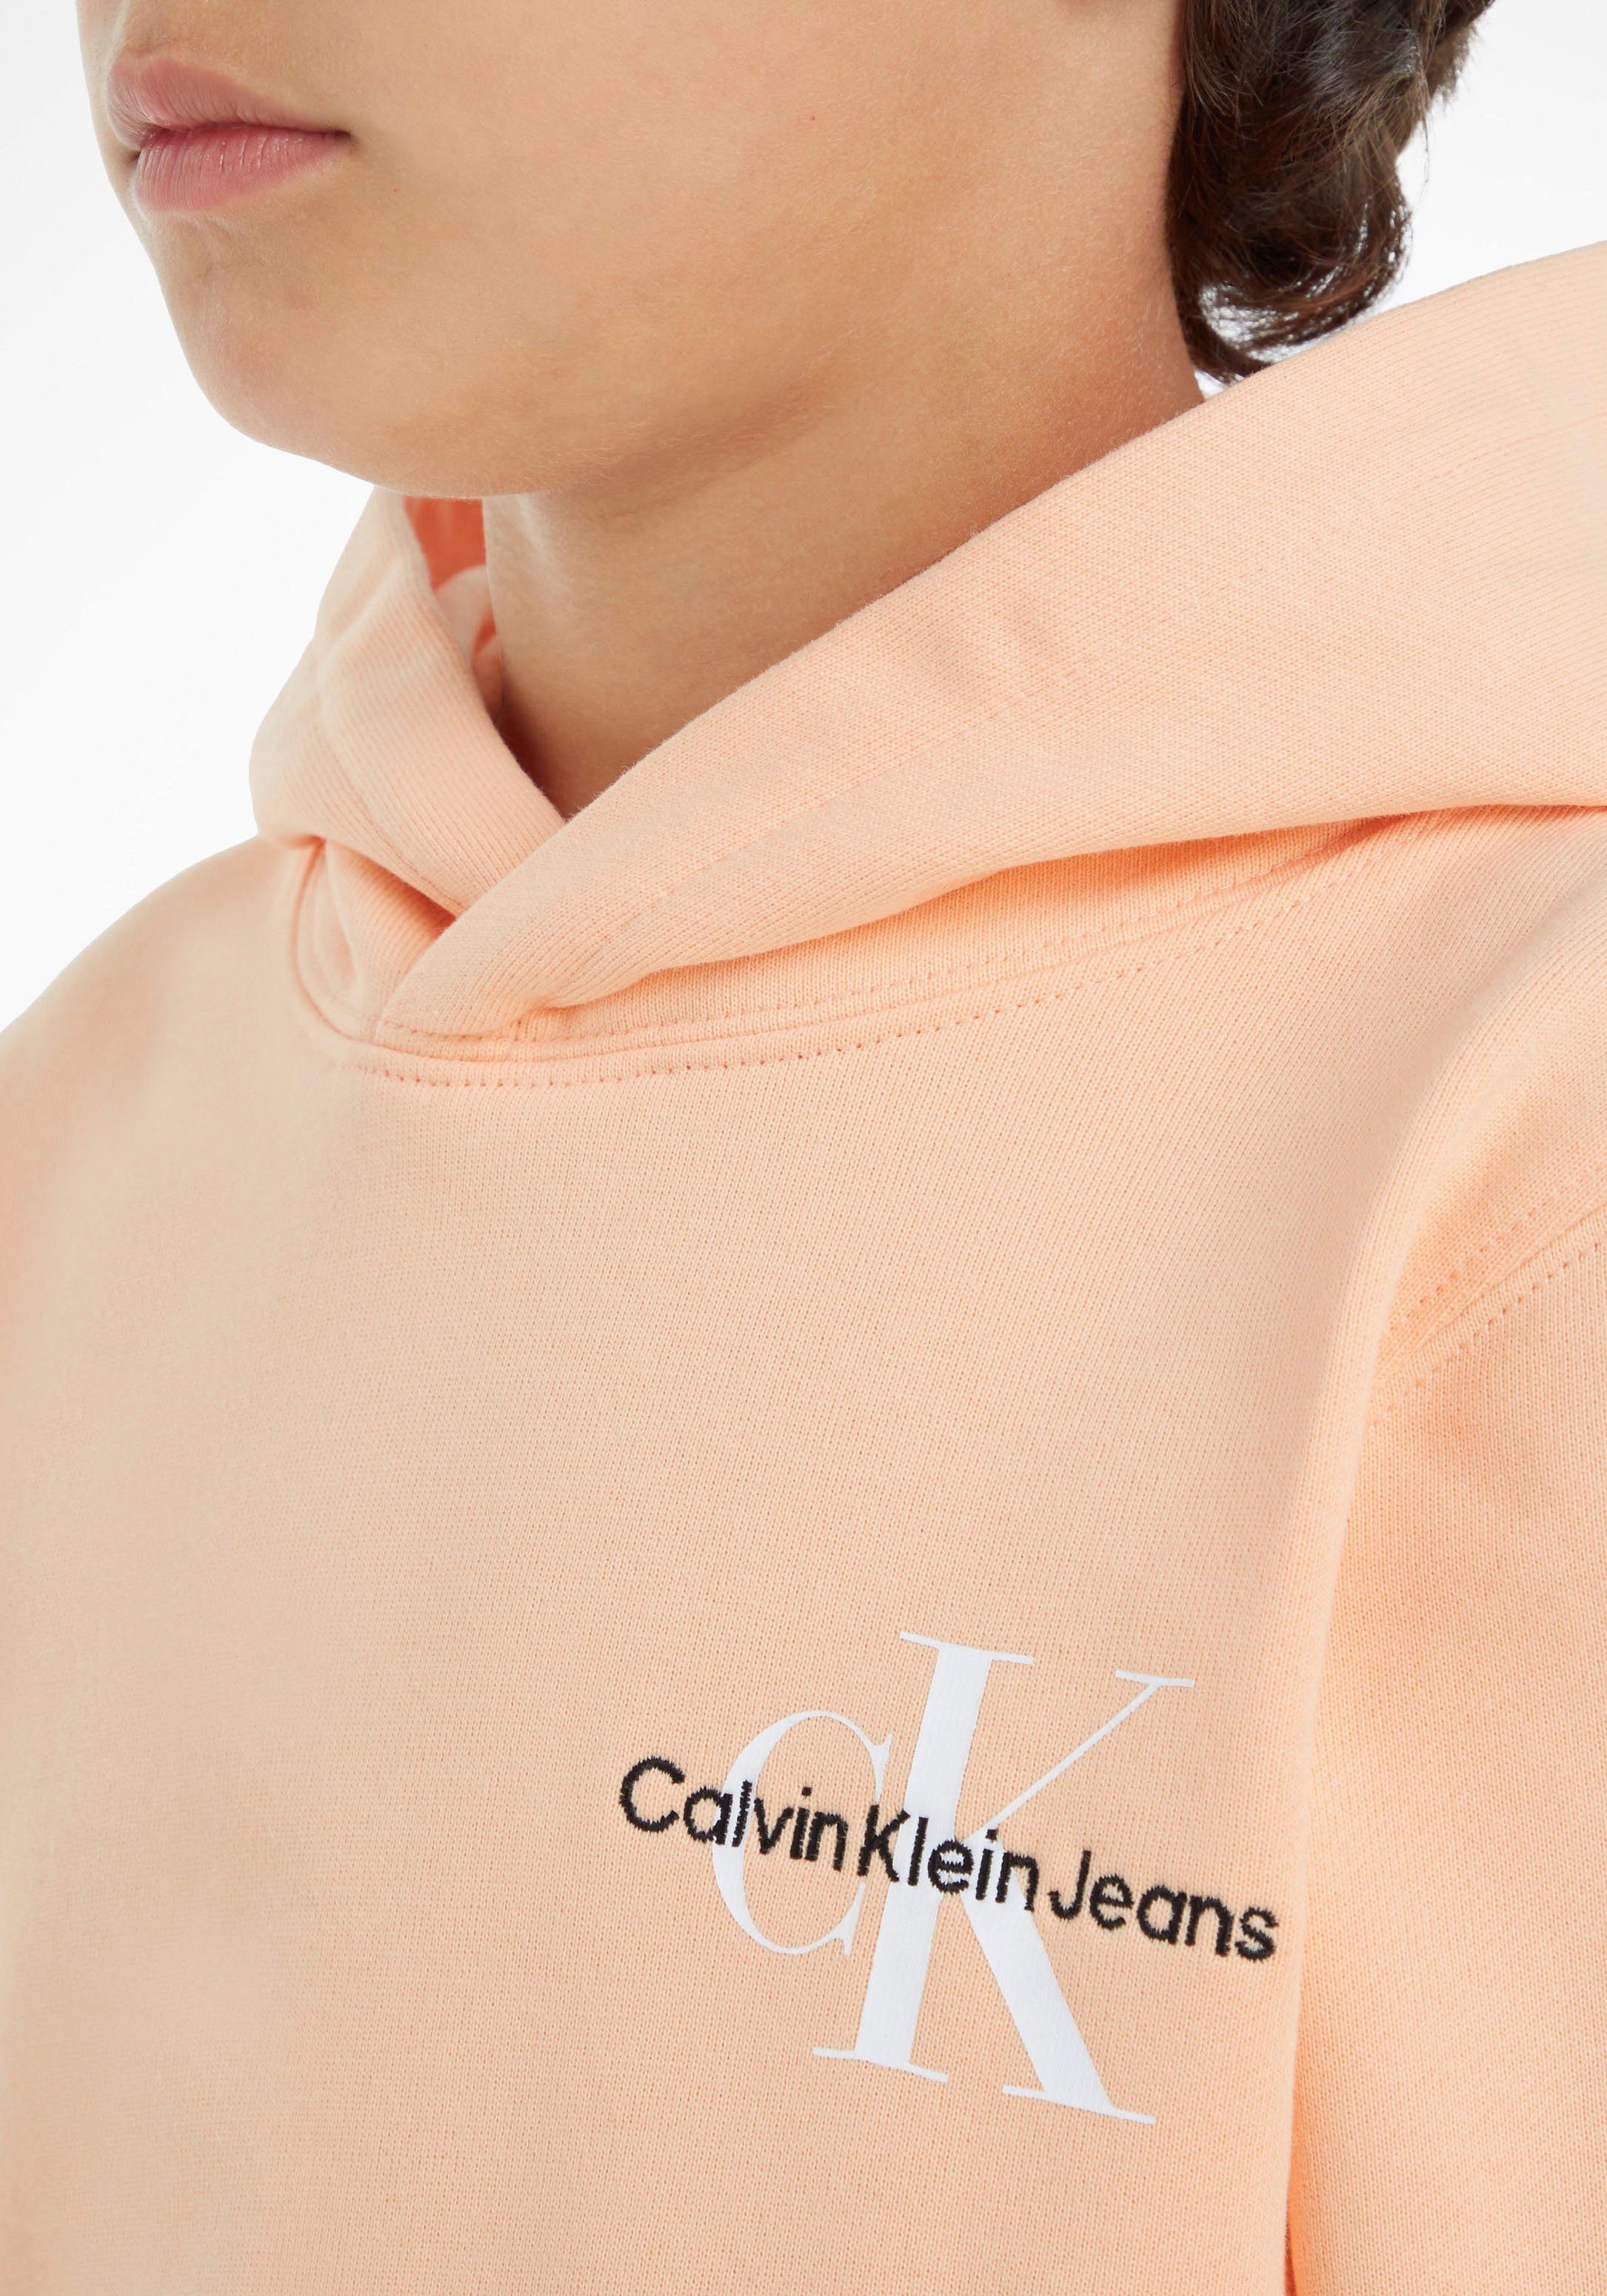 Calvin Klein Jeans Kapuzensweatshirt Kinder Junior auf Brust Logostickerei der Calvin Klein MiniMe,mit Kids